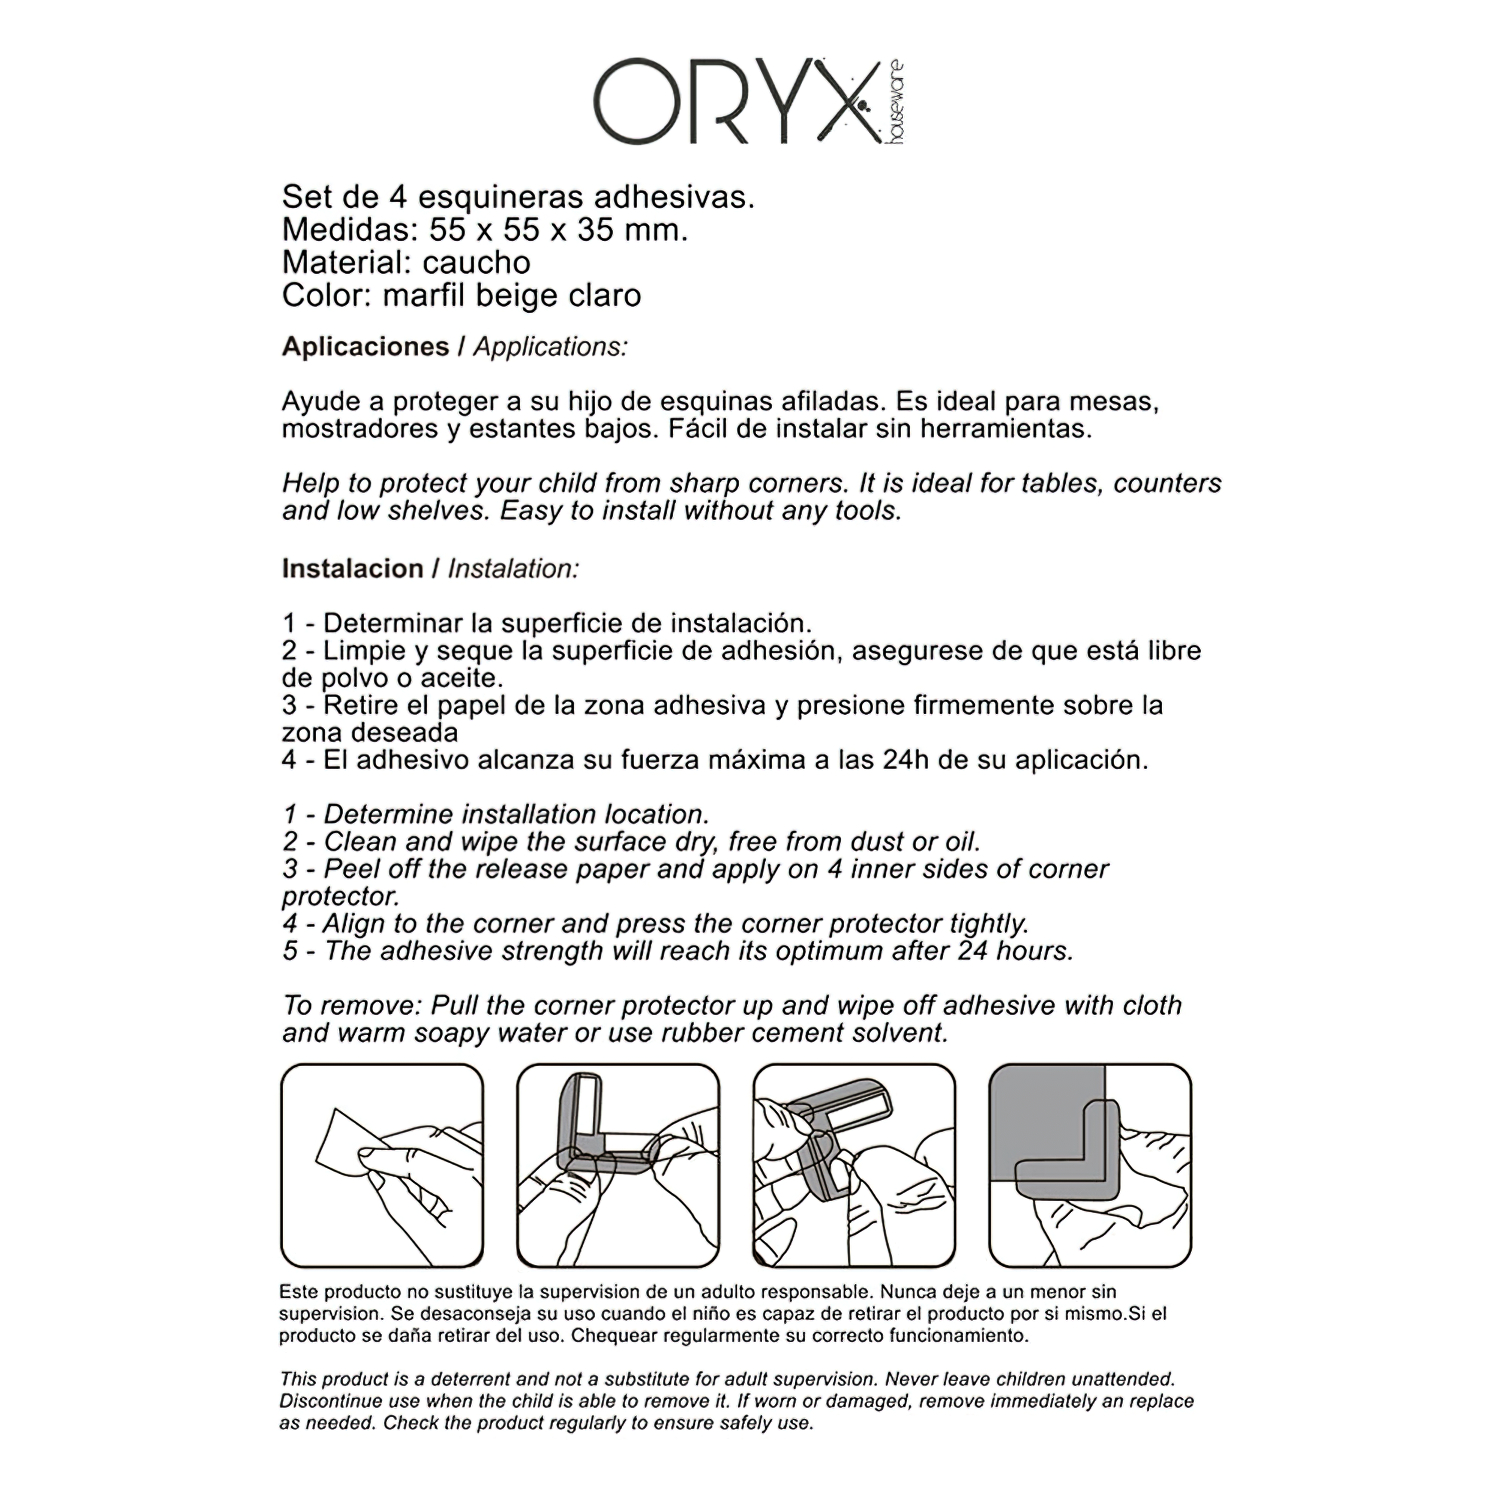 bister.4piezas Oryx 5520050 Protector Oryx Esquinas Muebles Caucho 